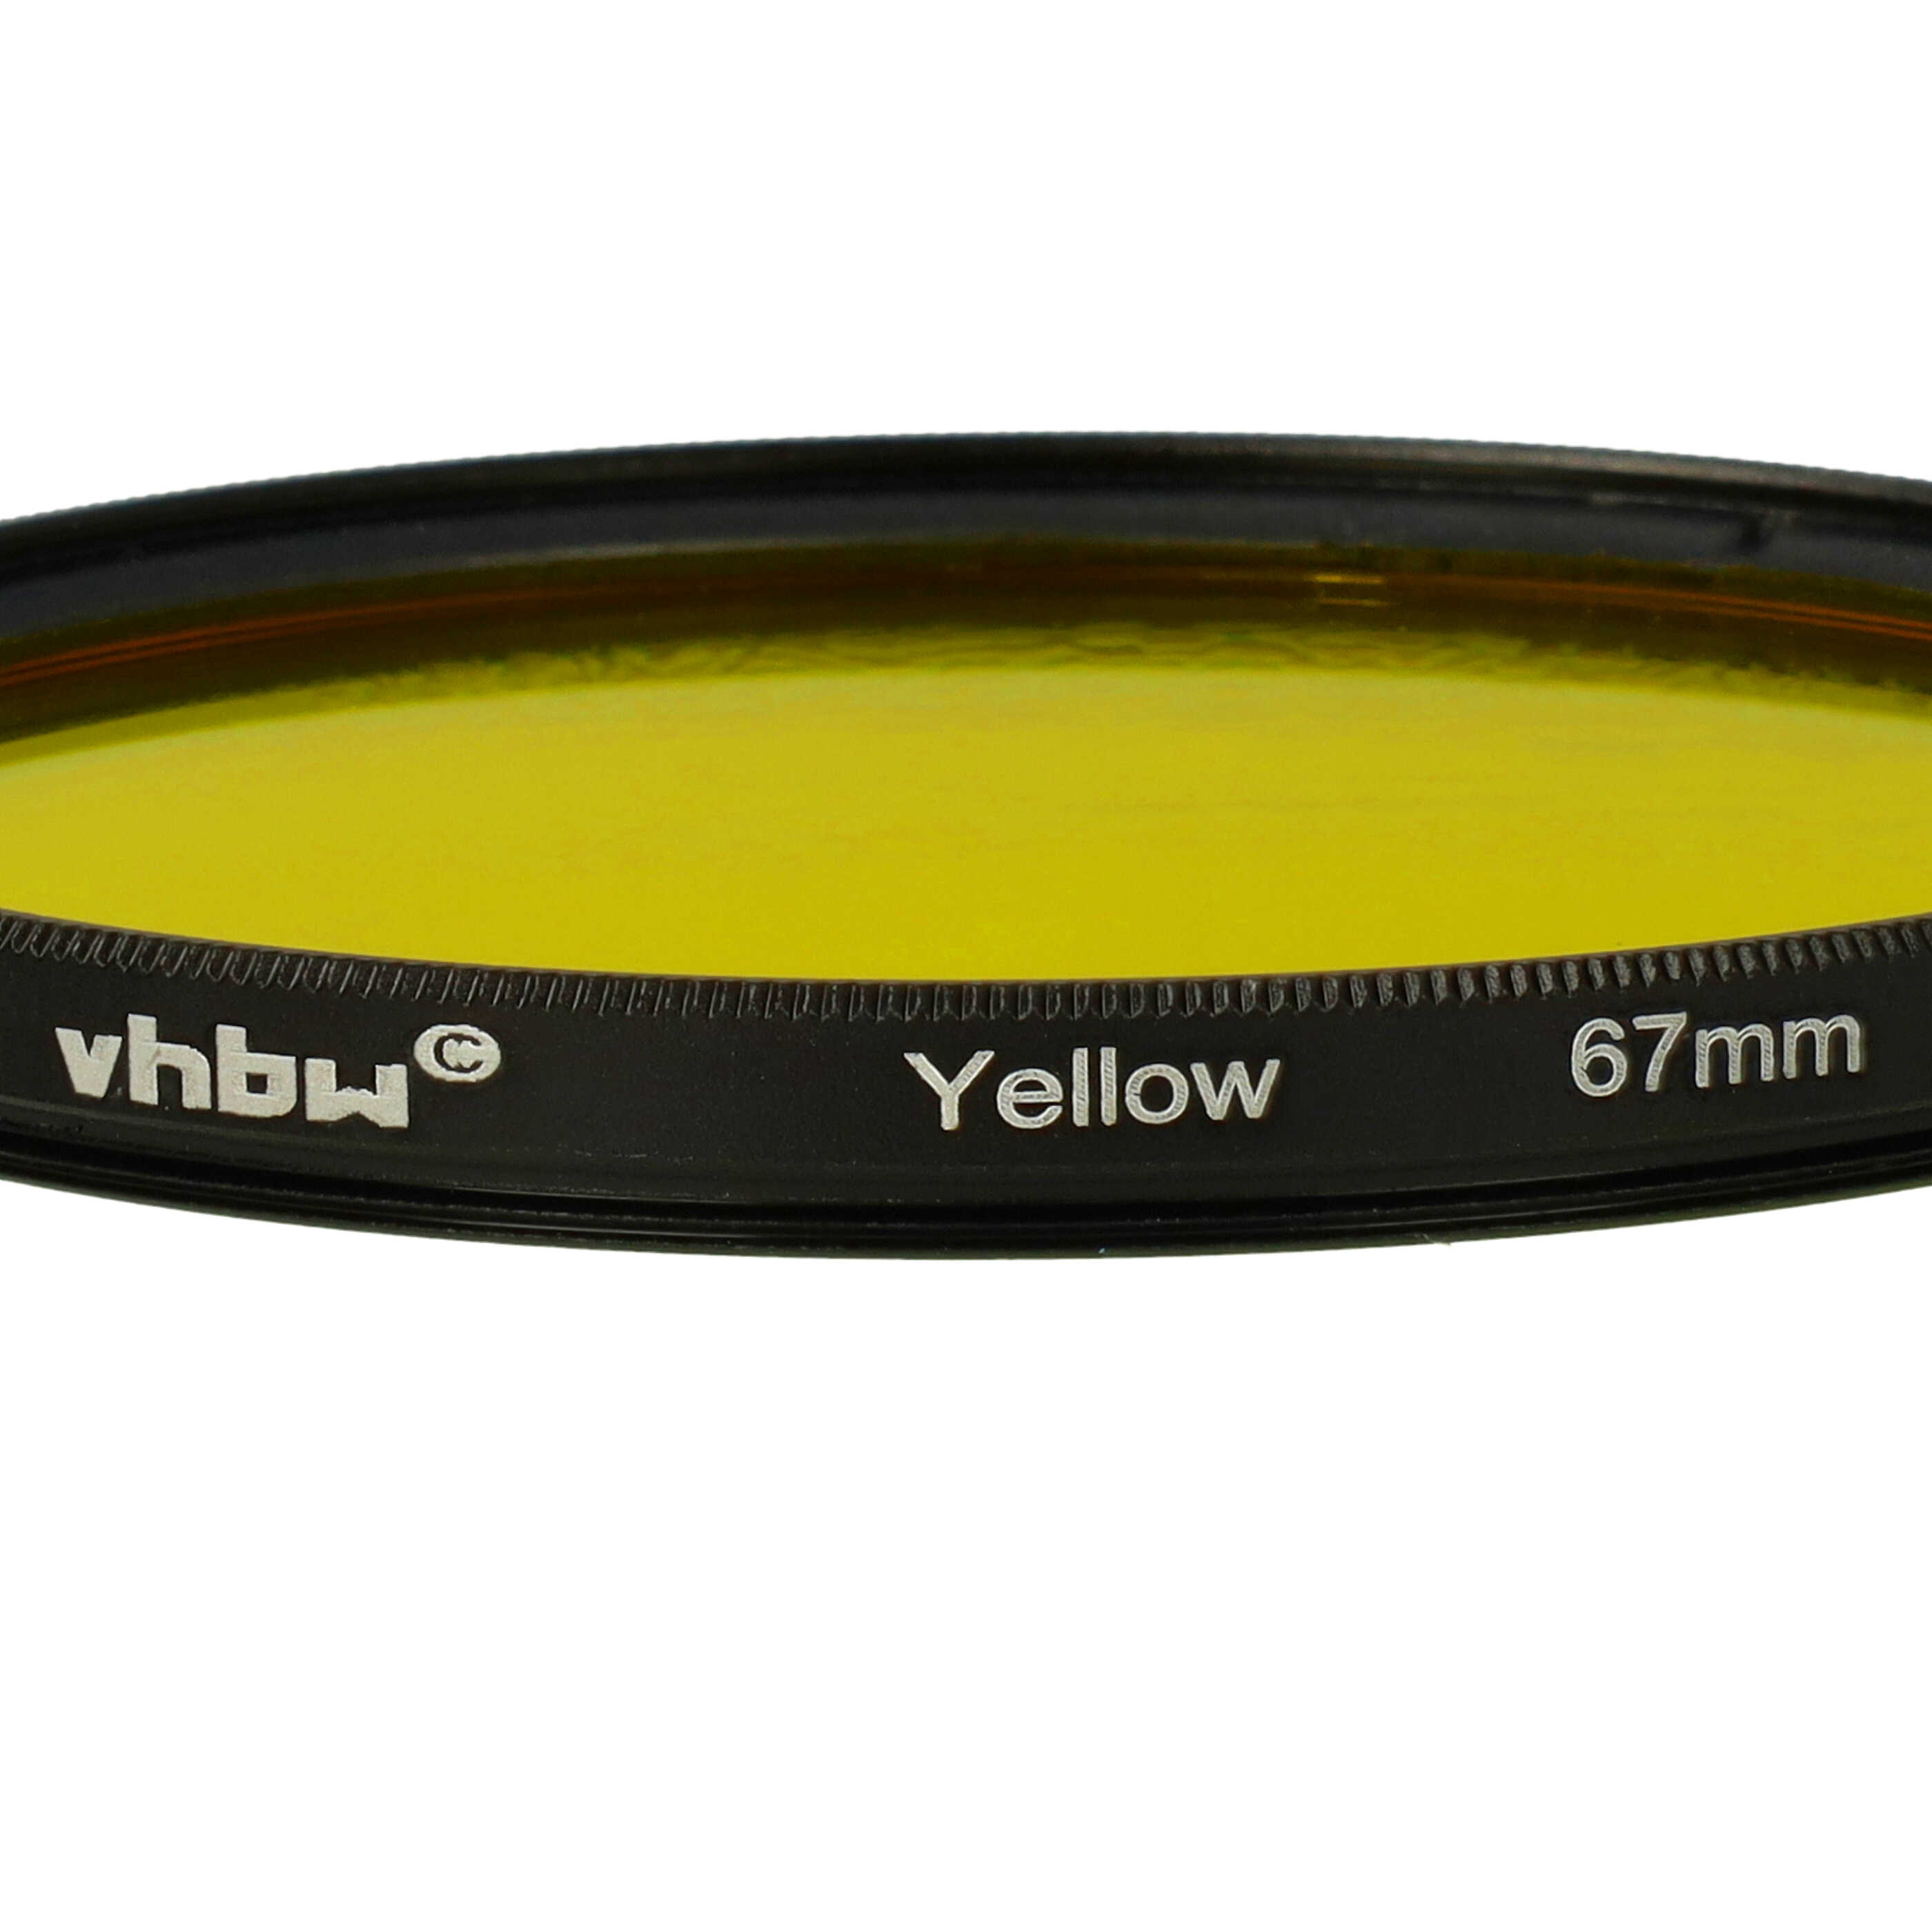 Filtr fotograficzny na obiektywy z gwintem 67 mm - filtr żółty